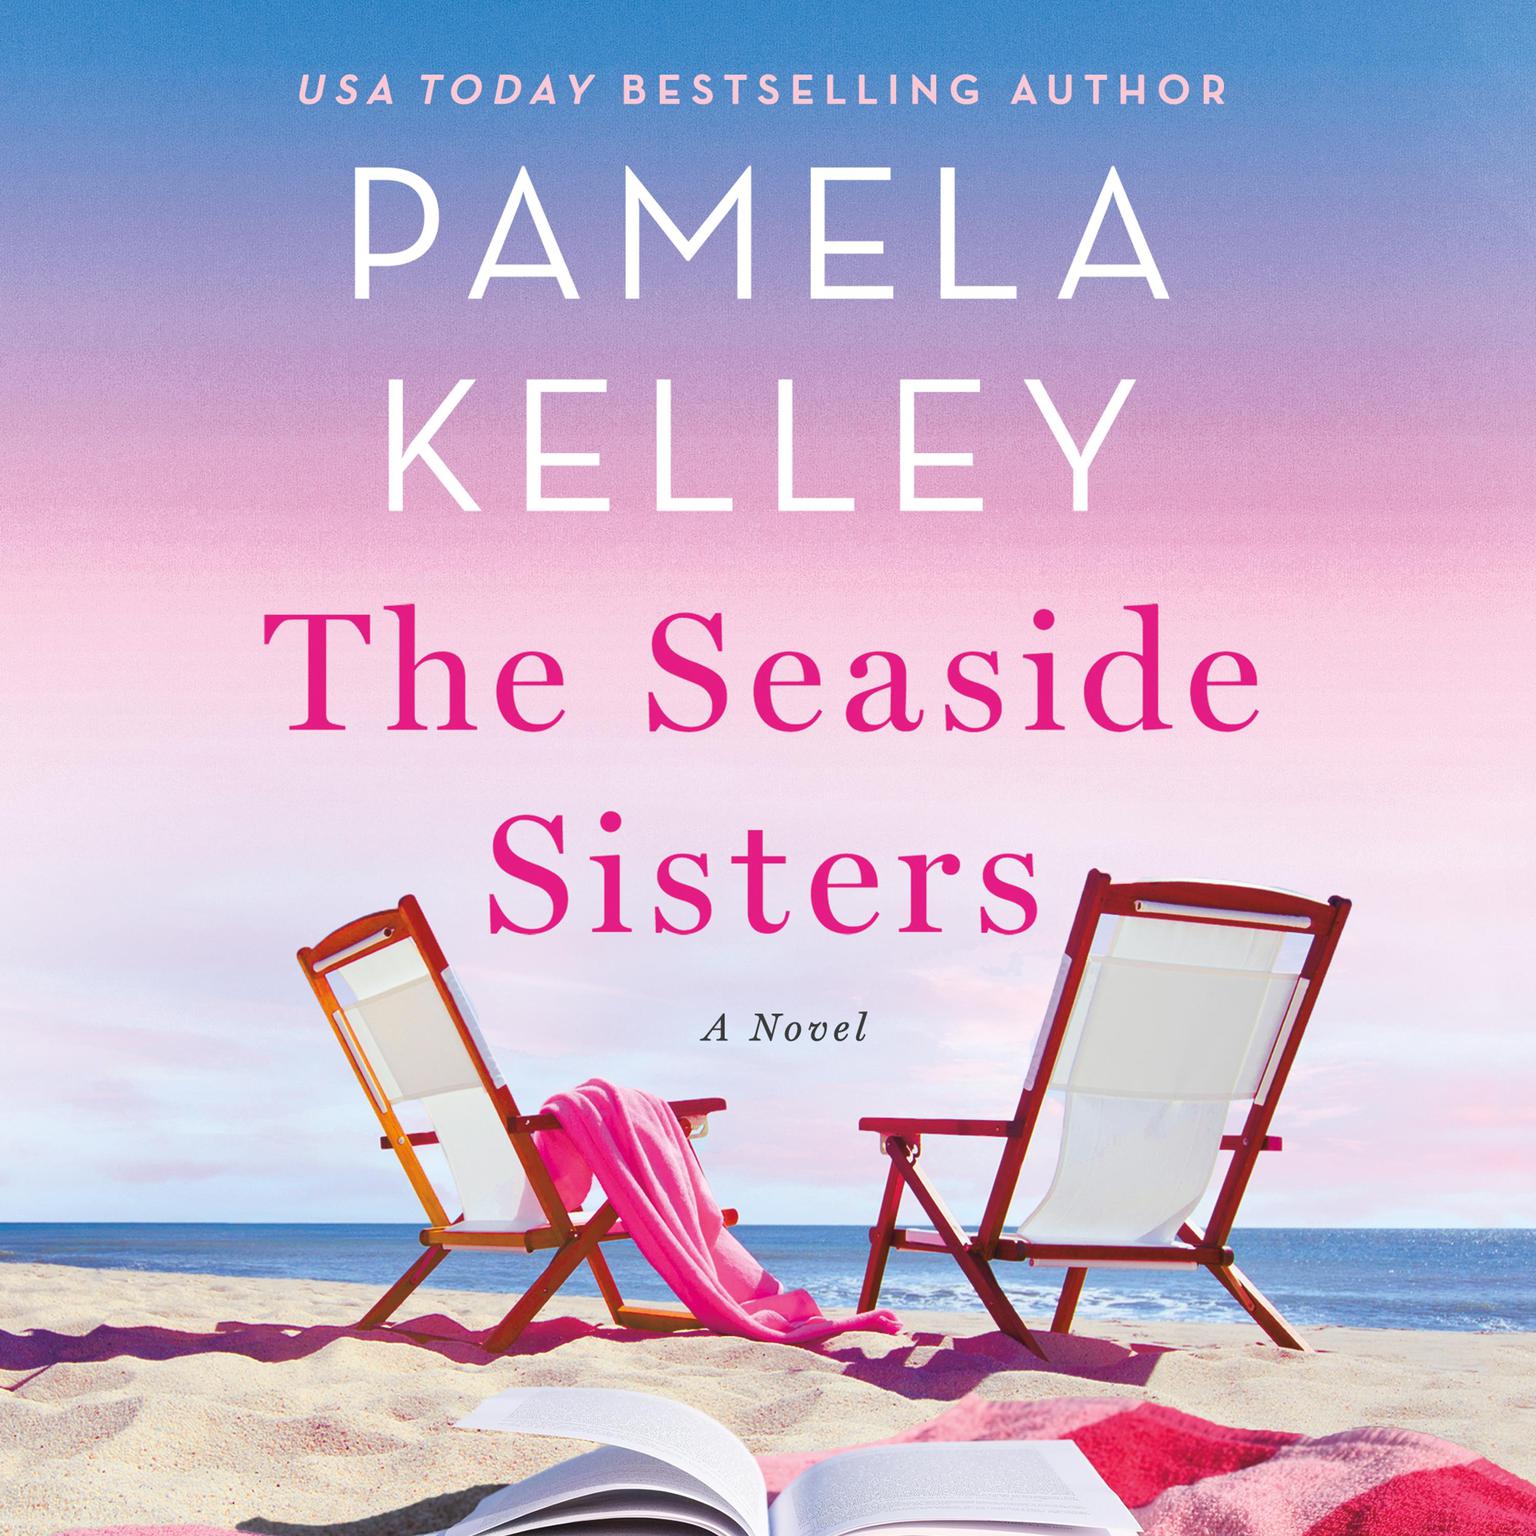 The Seaside Sisters: A Novel Audiobook, by Pamela M. Kelley